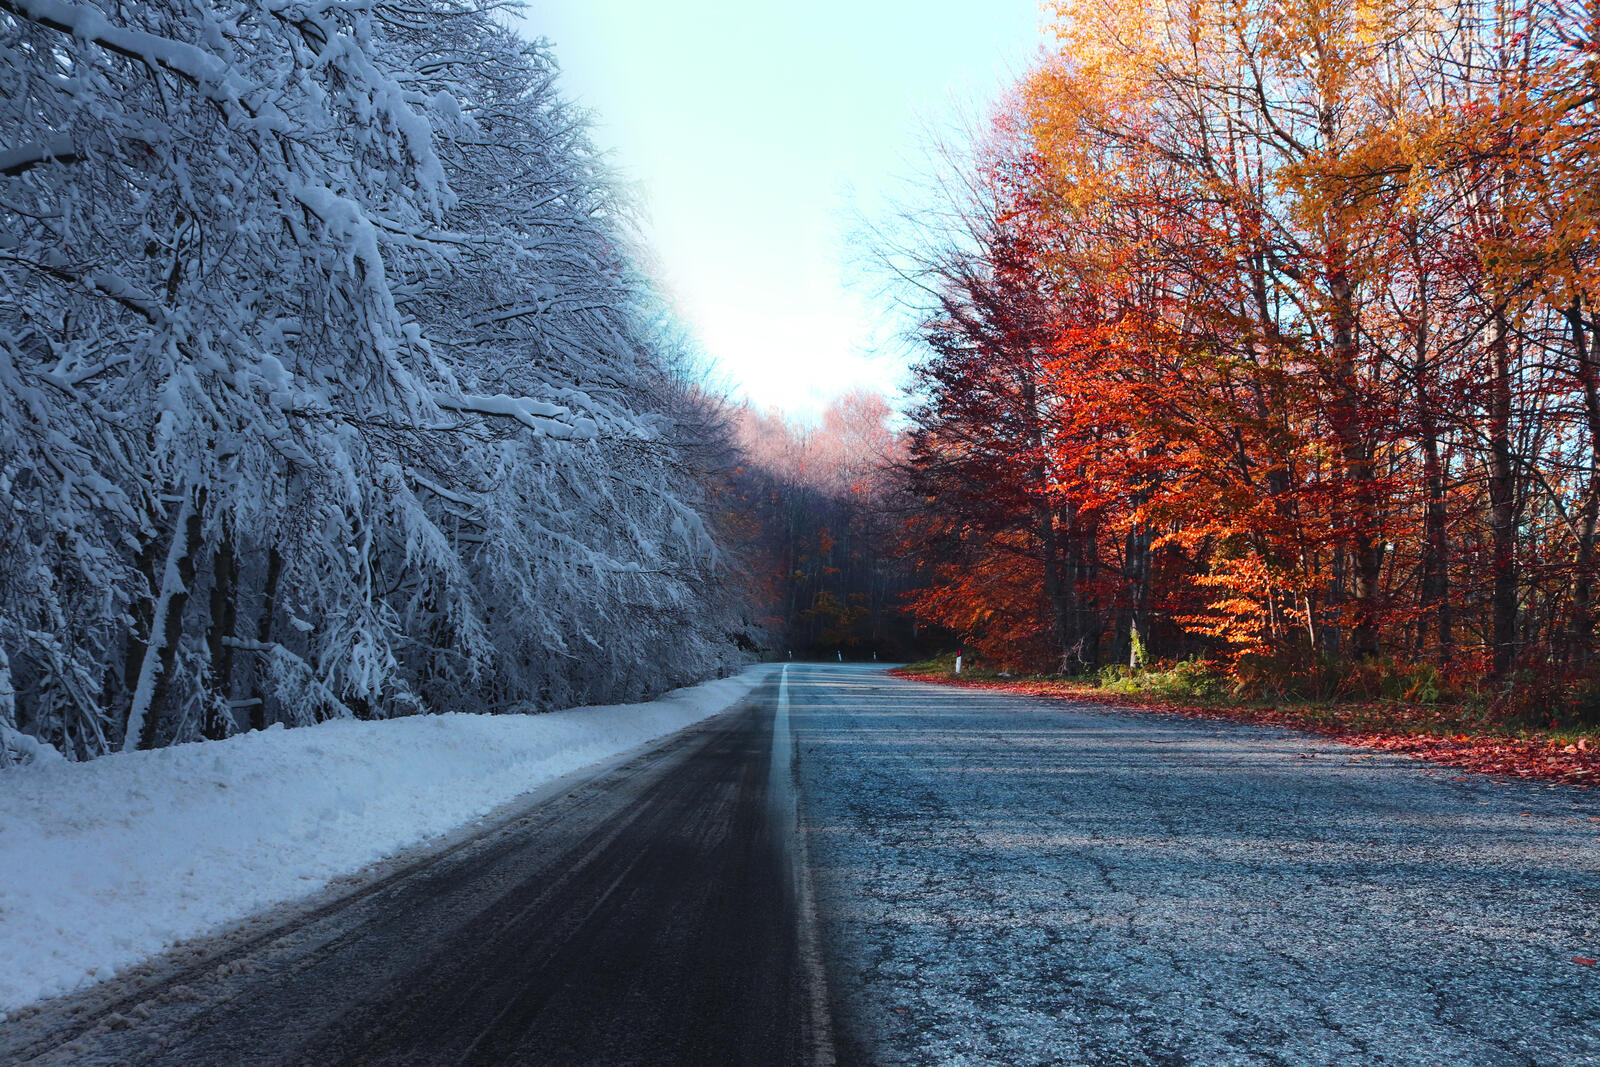 Бесплатное фото Снимок дороги с временами года, зимой и осенью